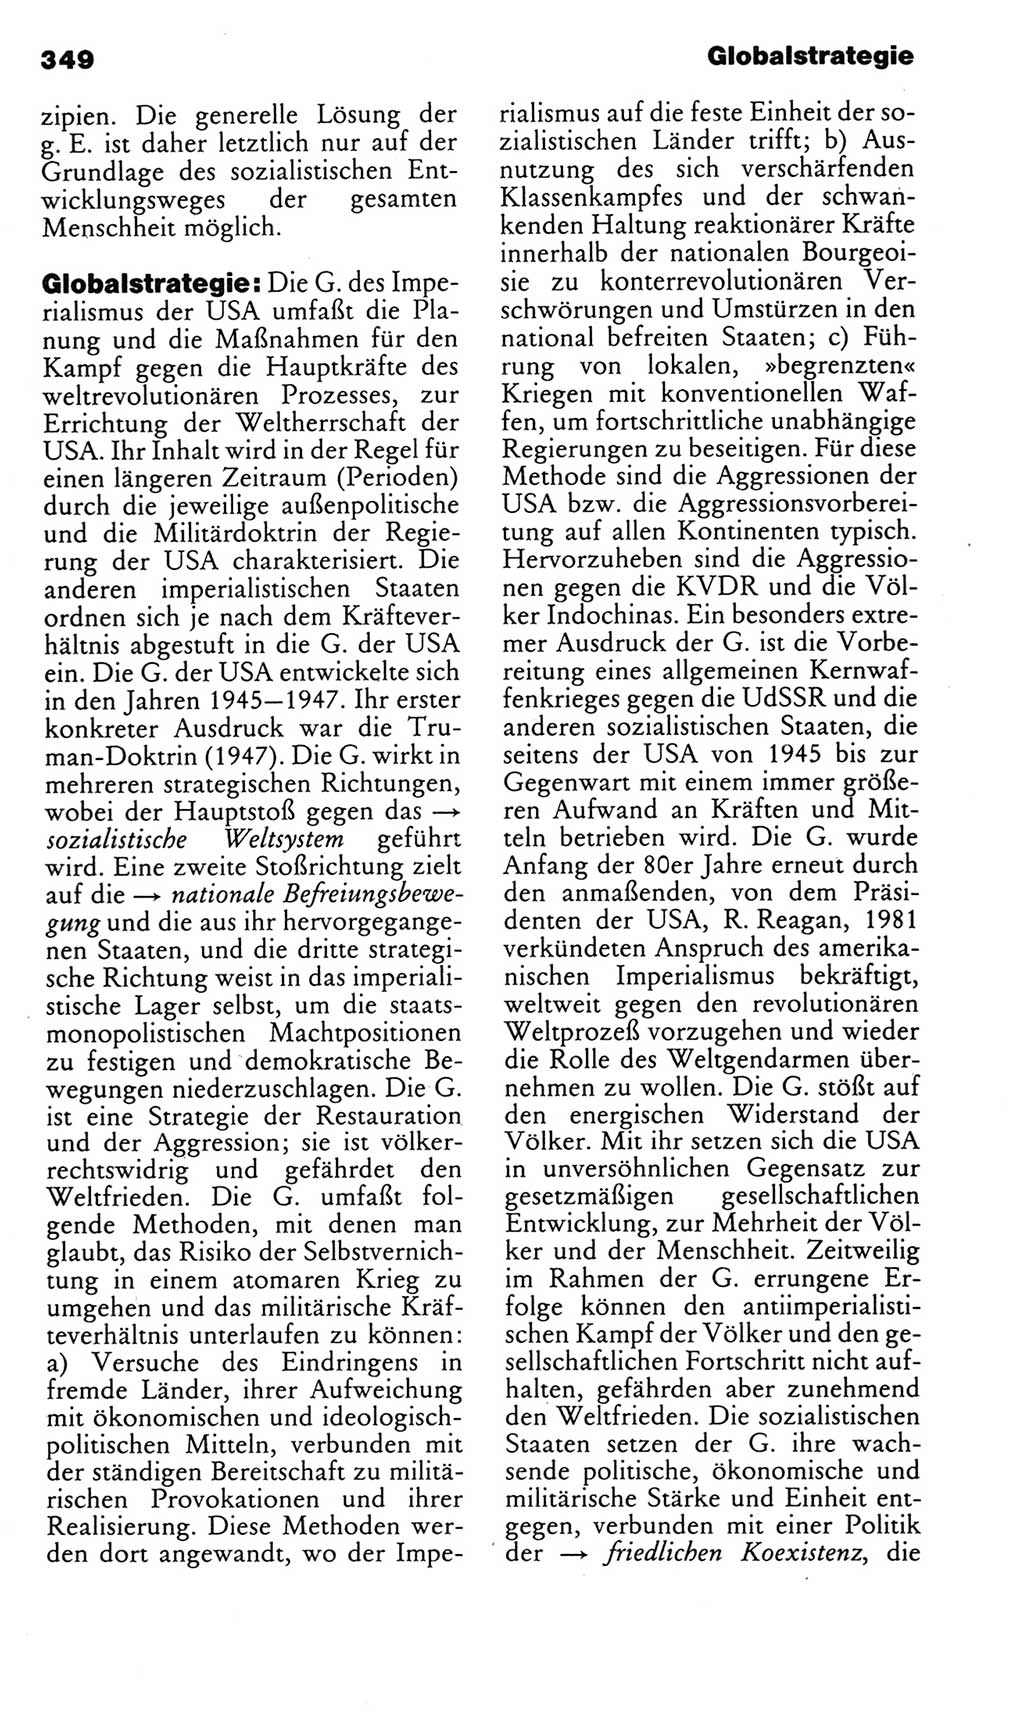 Kleines politisches Wörterbuch [Deutsche Demokratische Republik (DDR)] 1983, Seite 349 (Kl. pol. Wb. DDR 1983, S. 349)